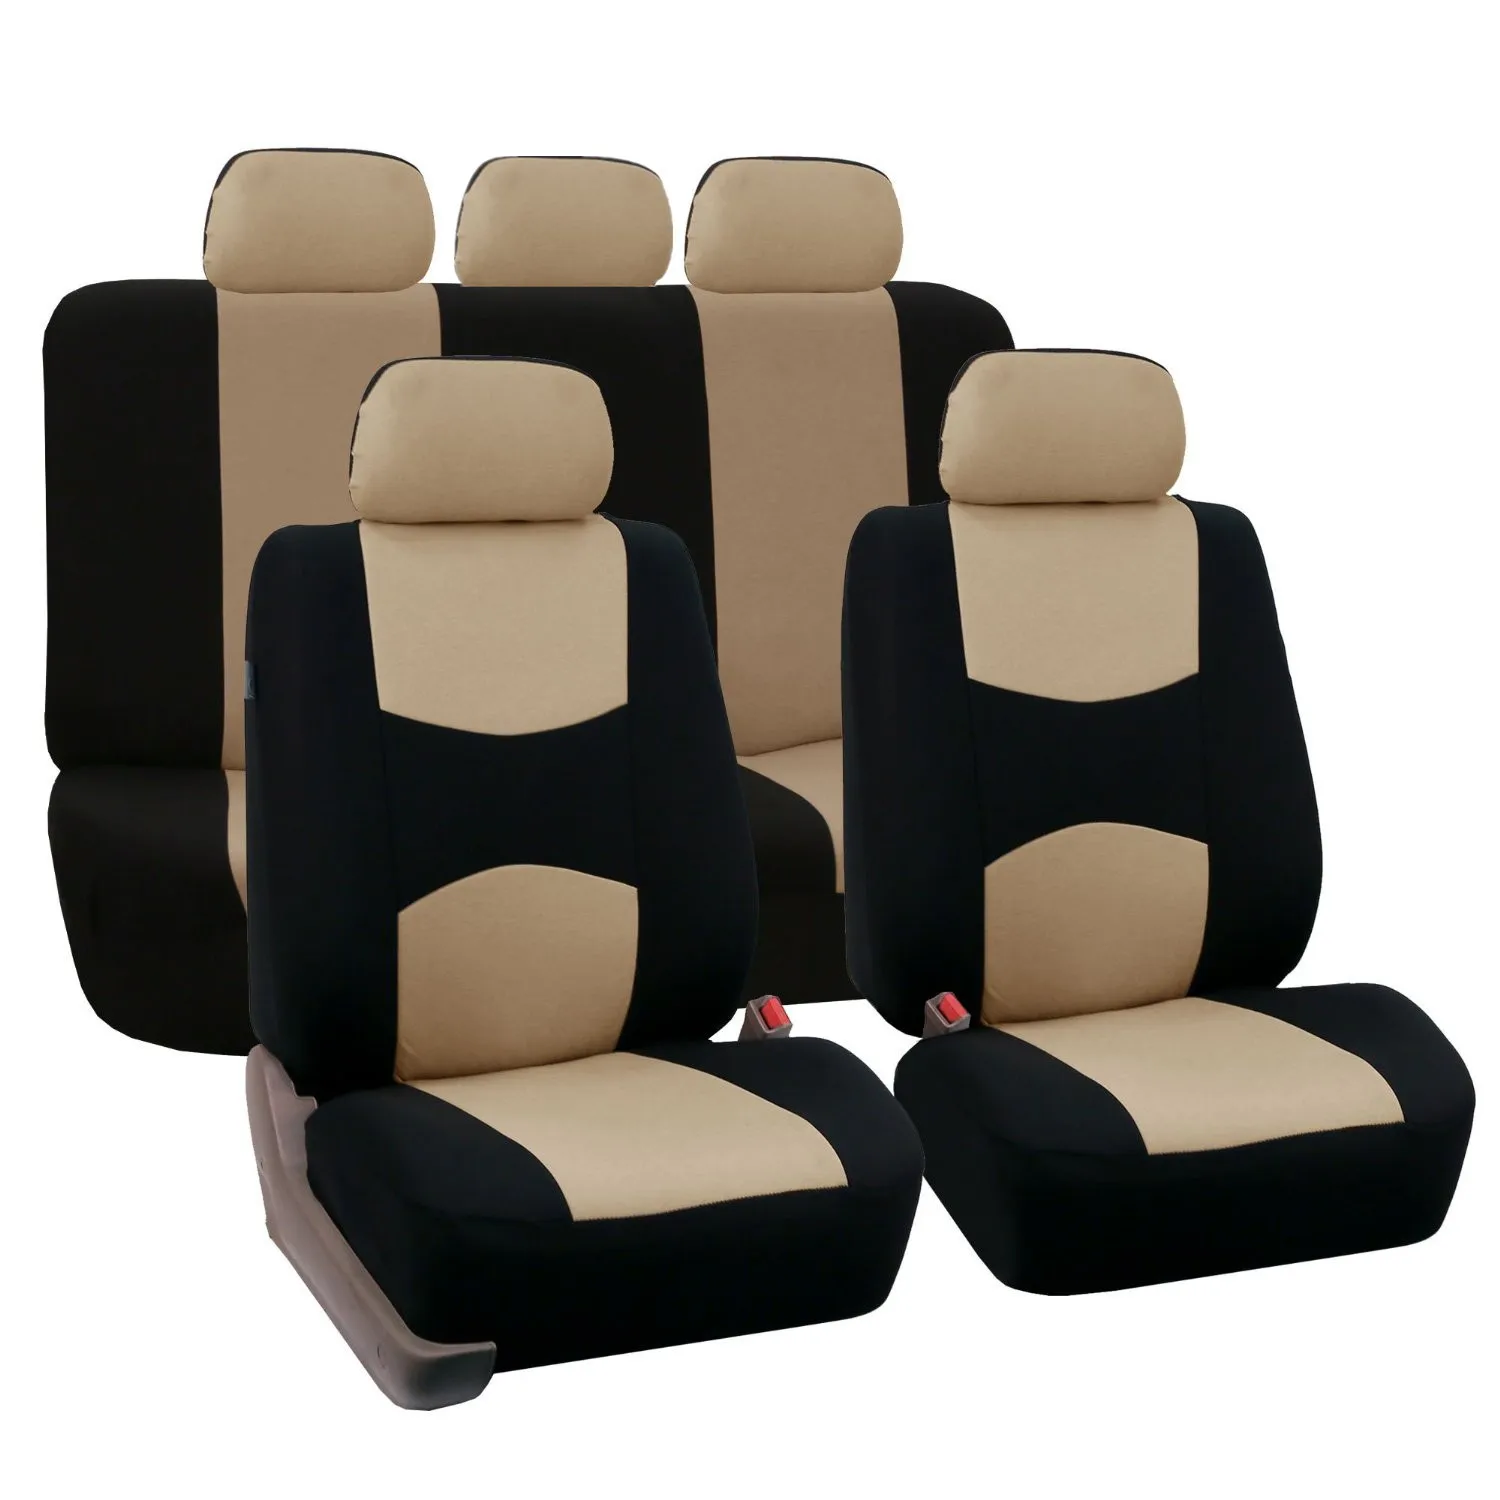 DINGDIAN5Seat автомобильный чехол для сиденья подходит HYUNDAI i10/HB20/i20/ix20/Genesis G80, G90/TUCSON/IX35/New SantaFe/Grandeur/rohans/VERACR/MATRIX